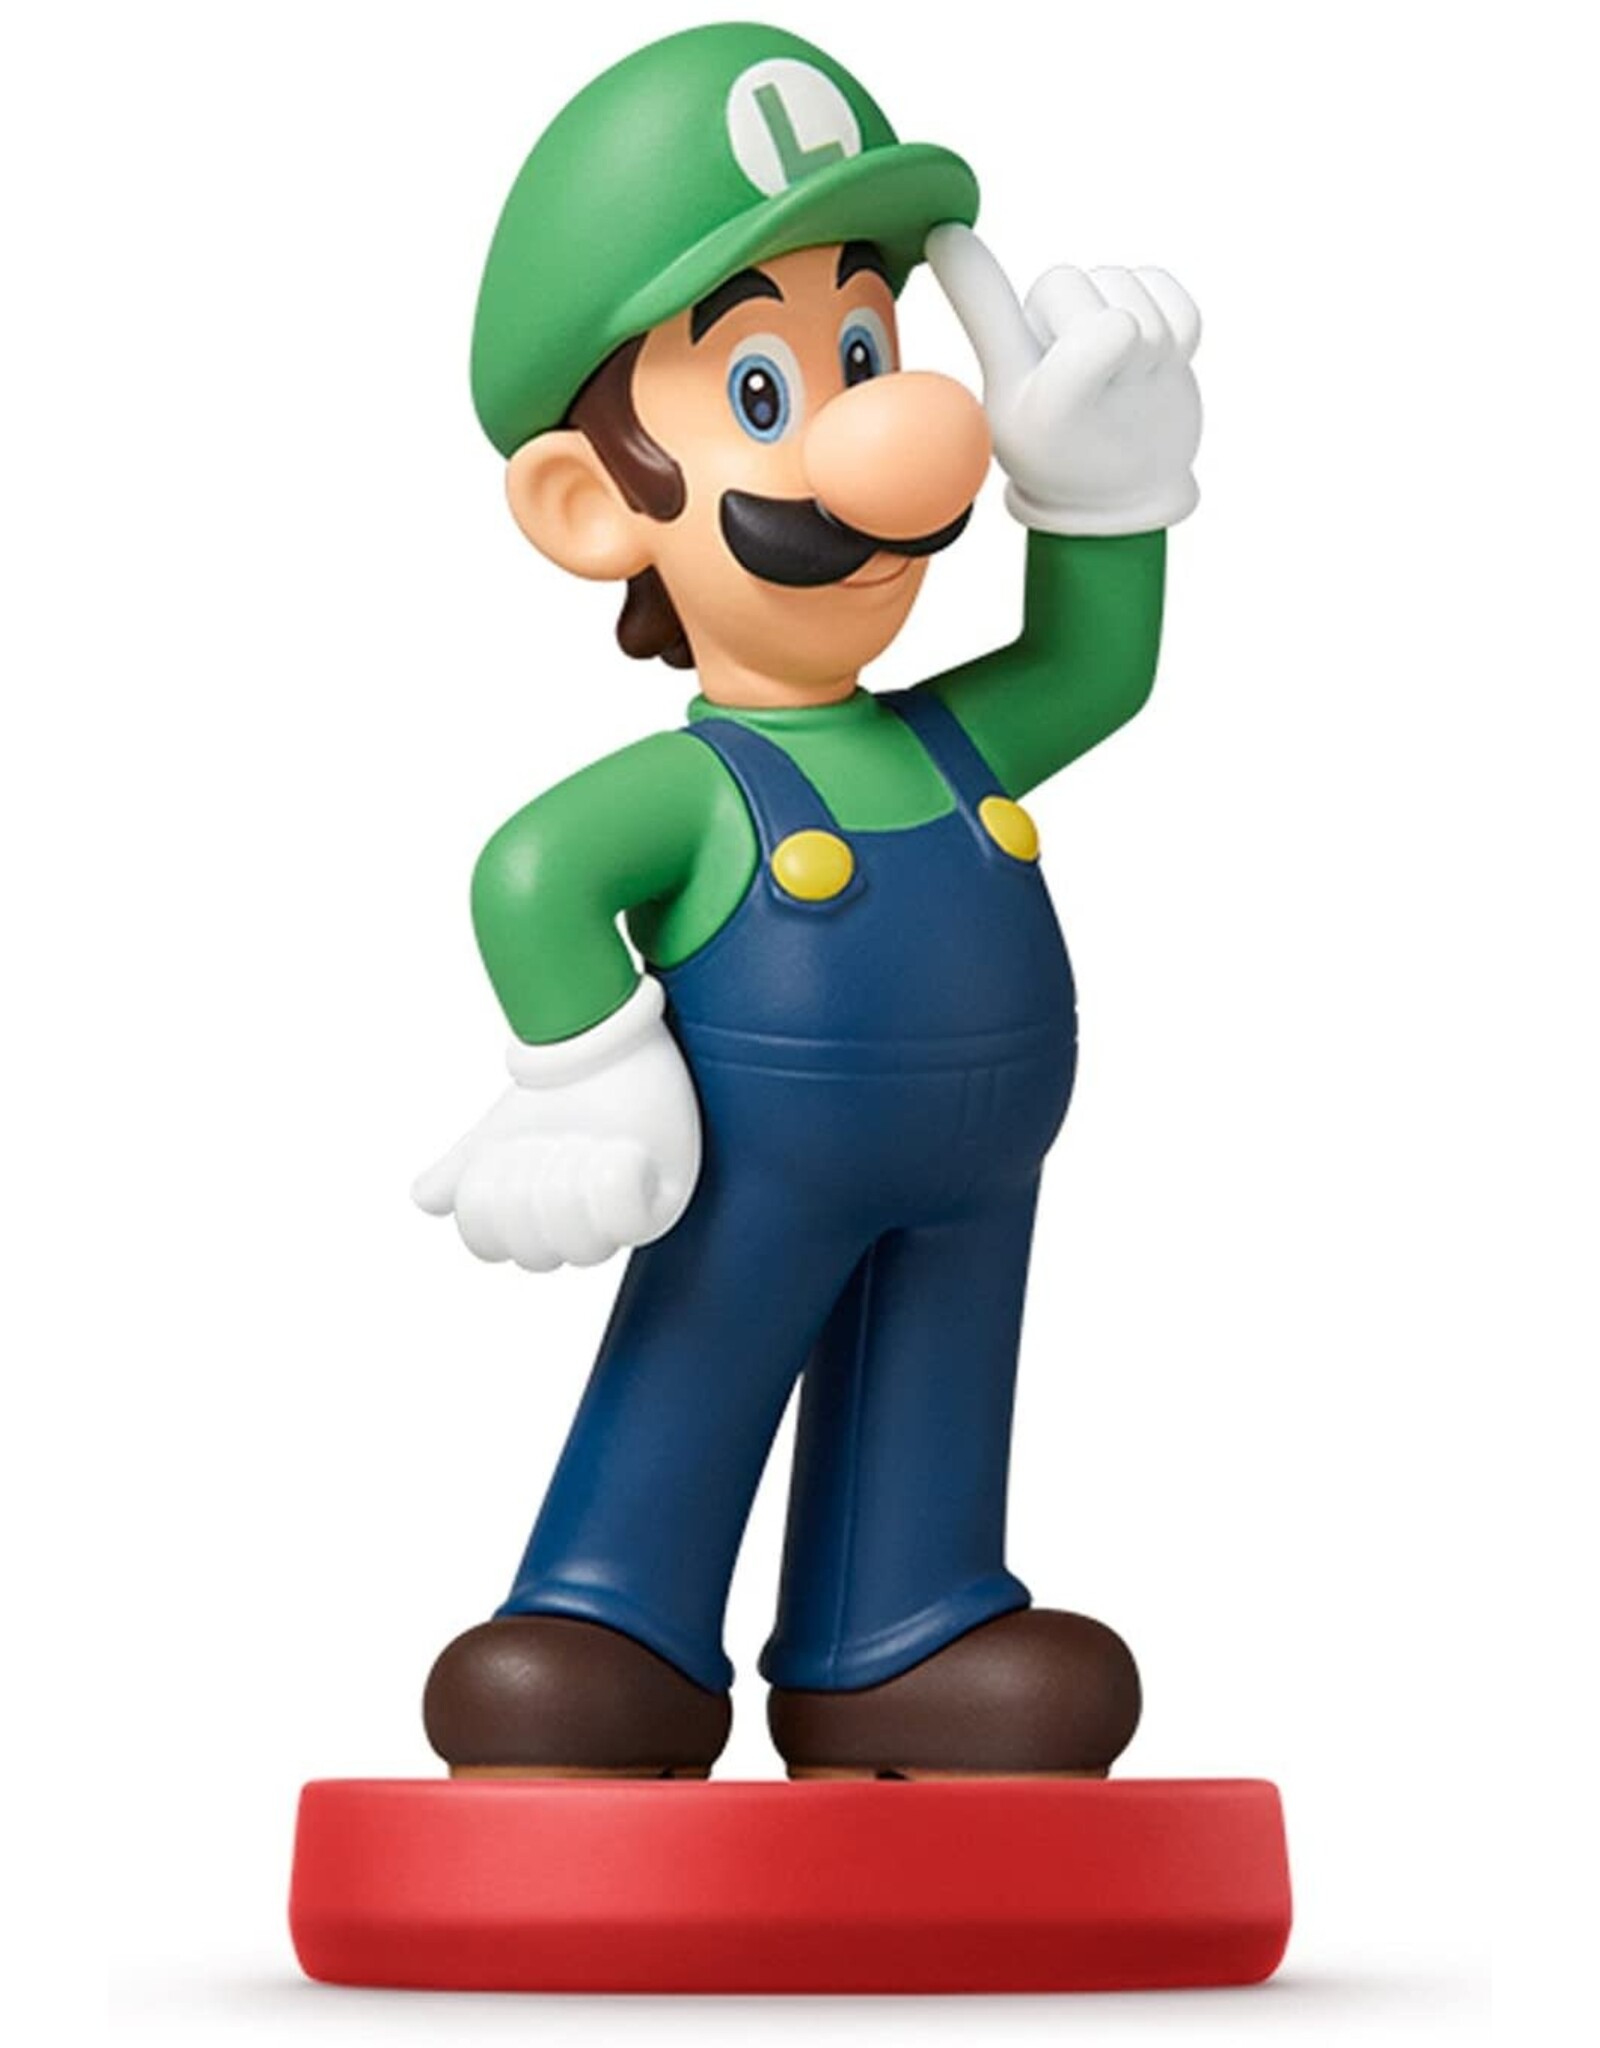 Amiibo Luigi Amiibo (Super Mario, Used)